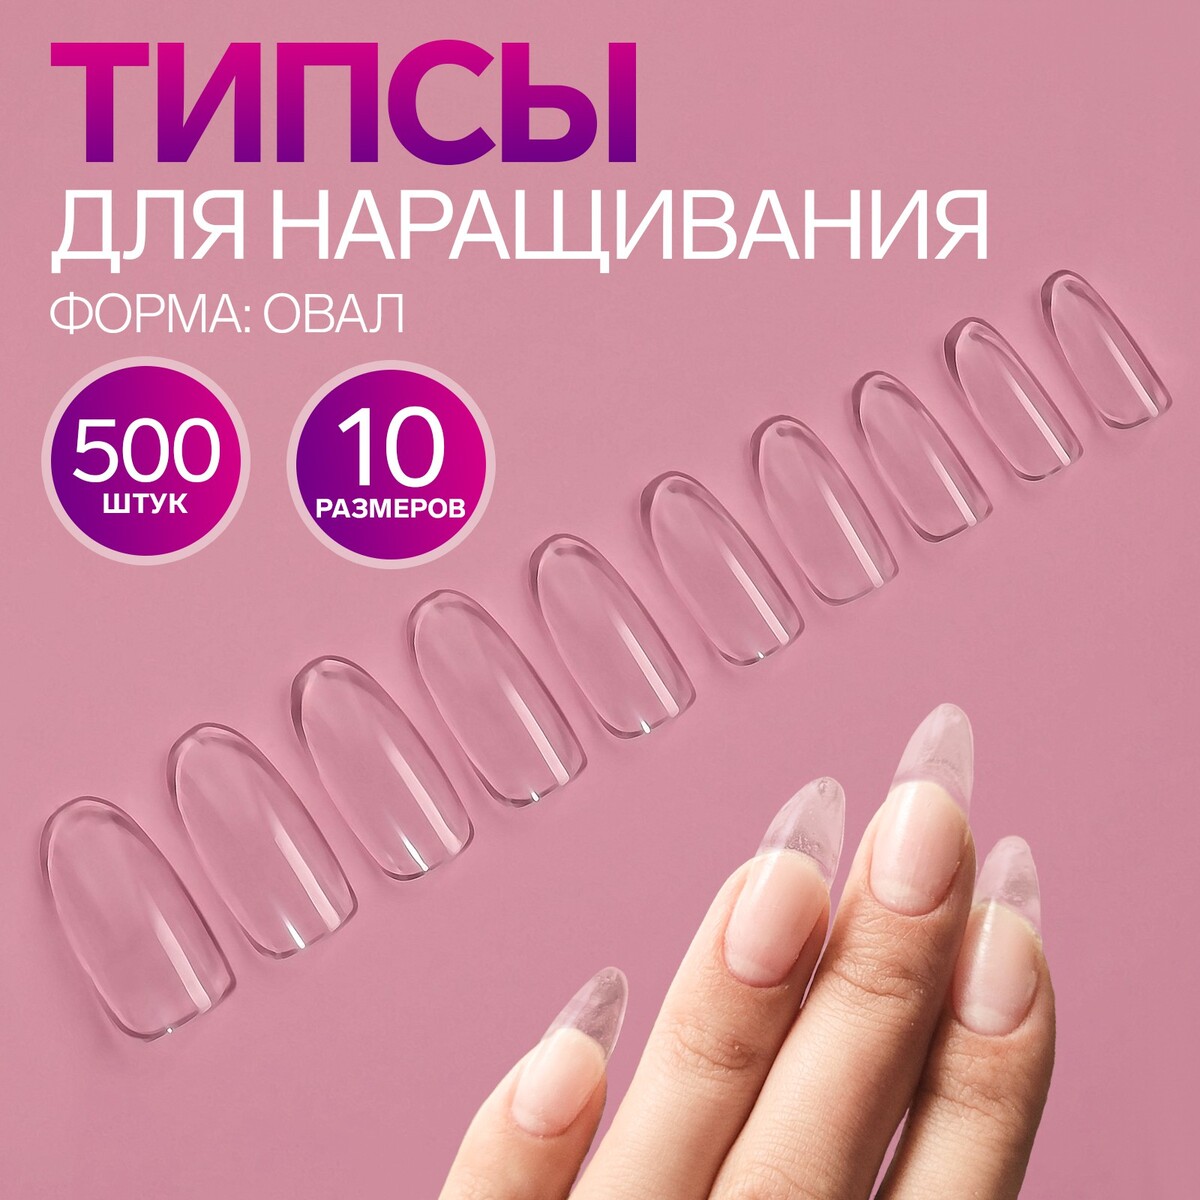 Типсы для наращивания ногтей, 500 шт, форма овал, 10 размеров, цвет прозрачный типсы для наращивания ногтей 500 шт форма овал в пакете 10 размеров молочный